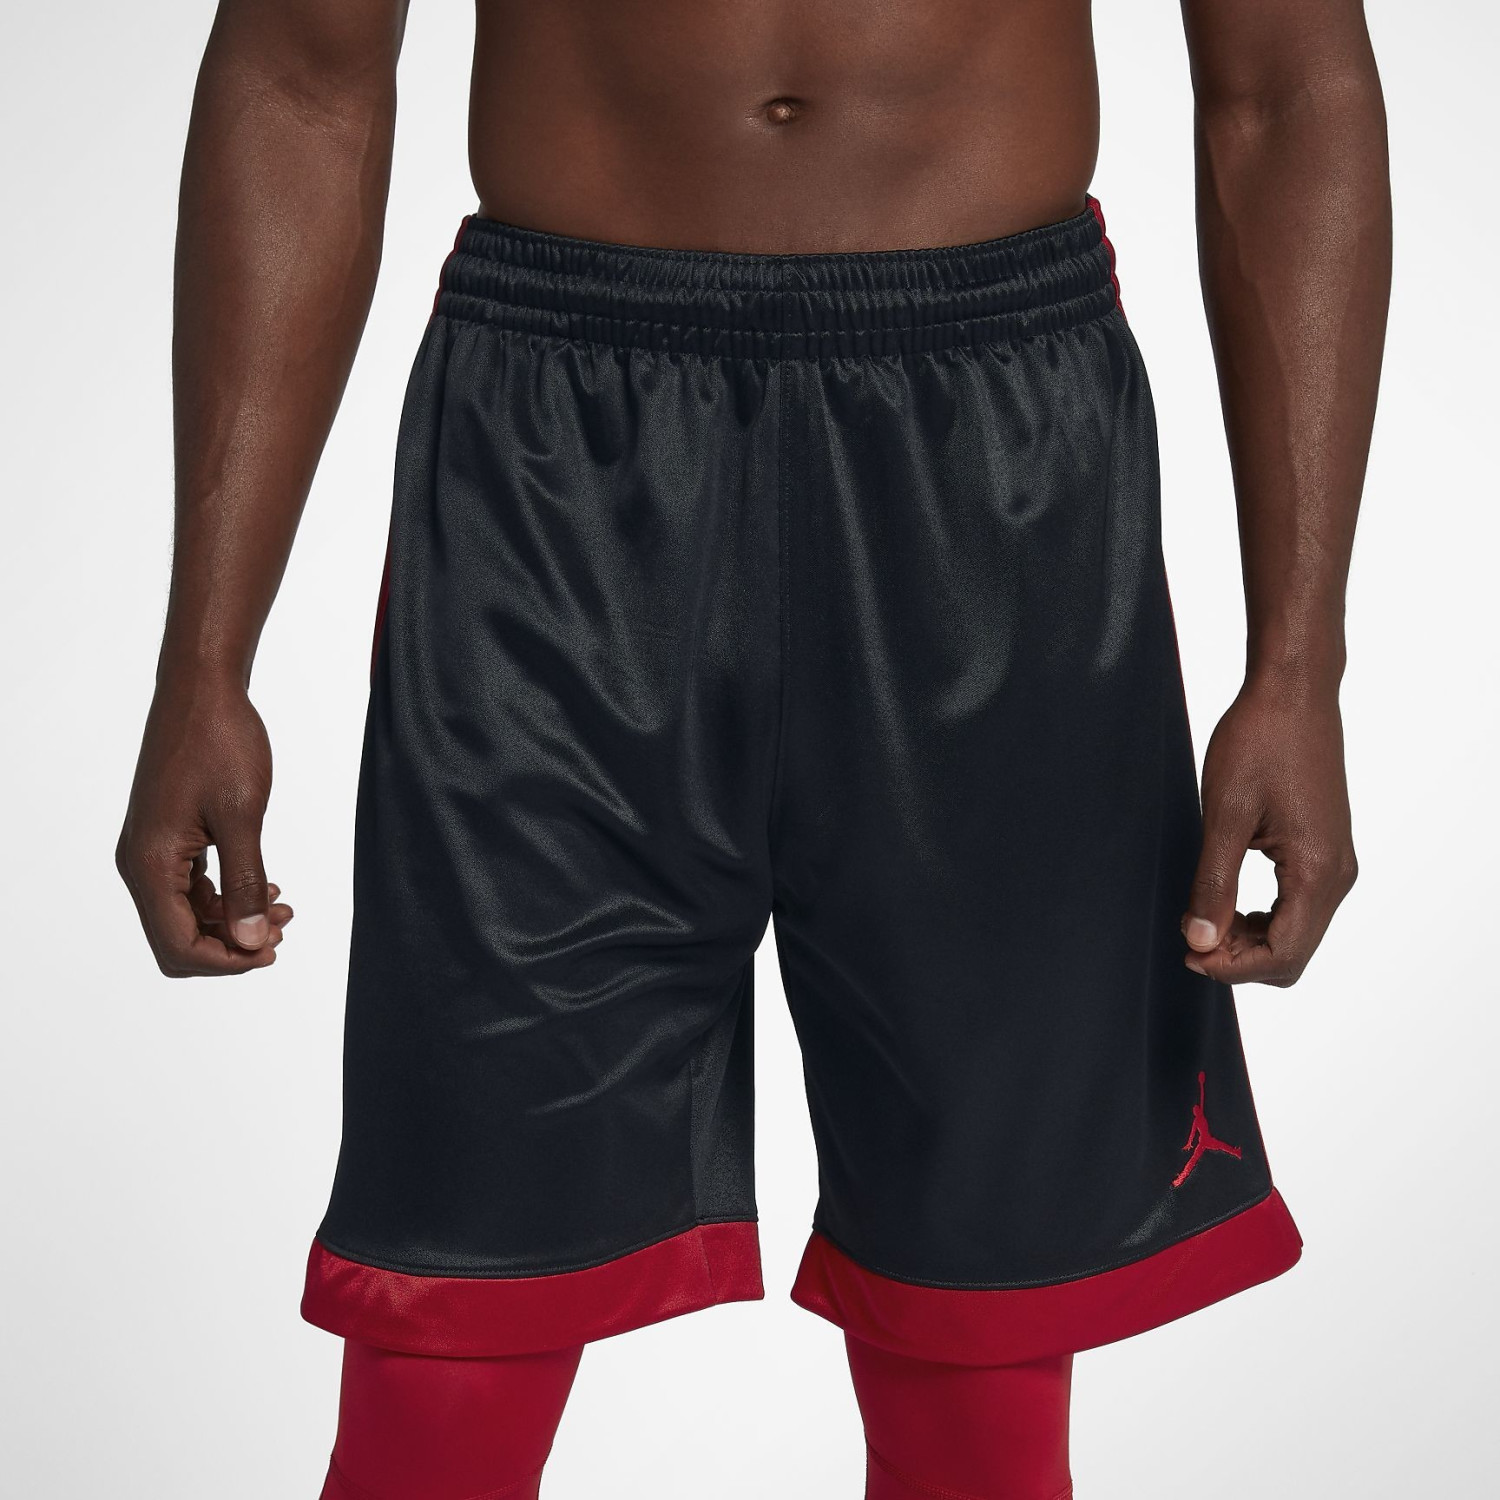 Nike Men's Basketball Shorts Jordan Shimmer